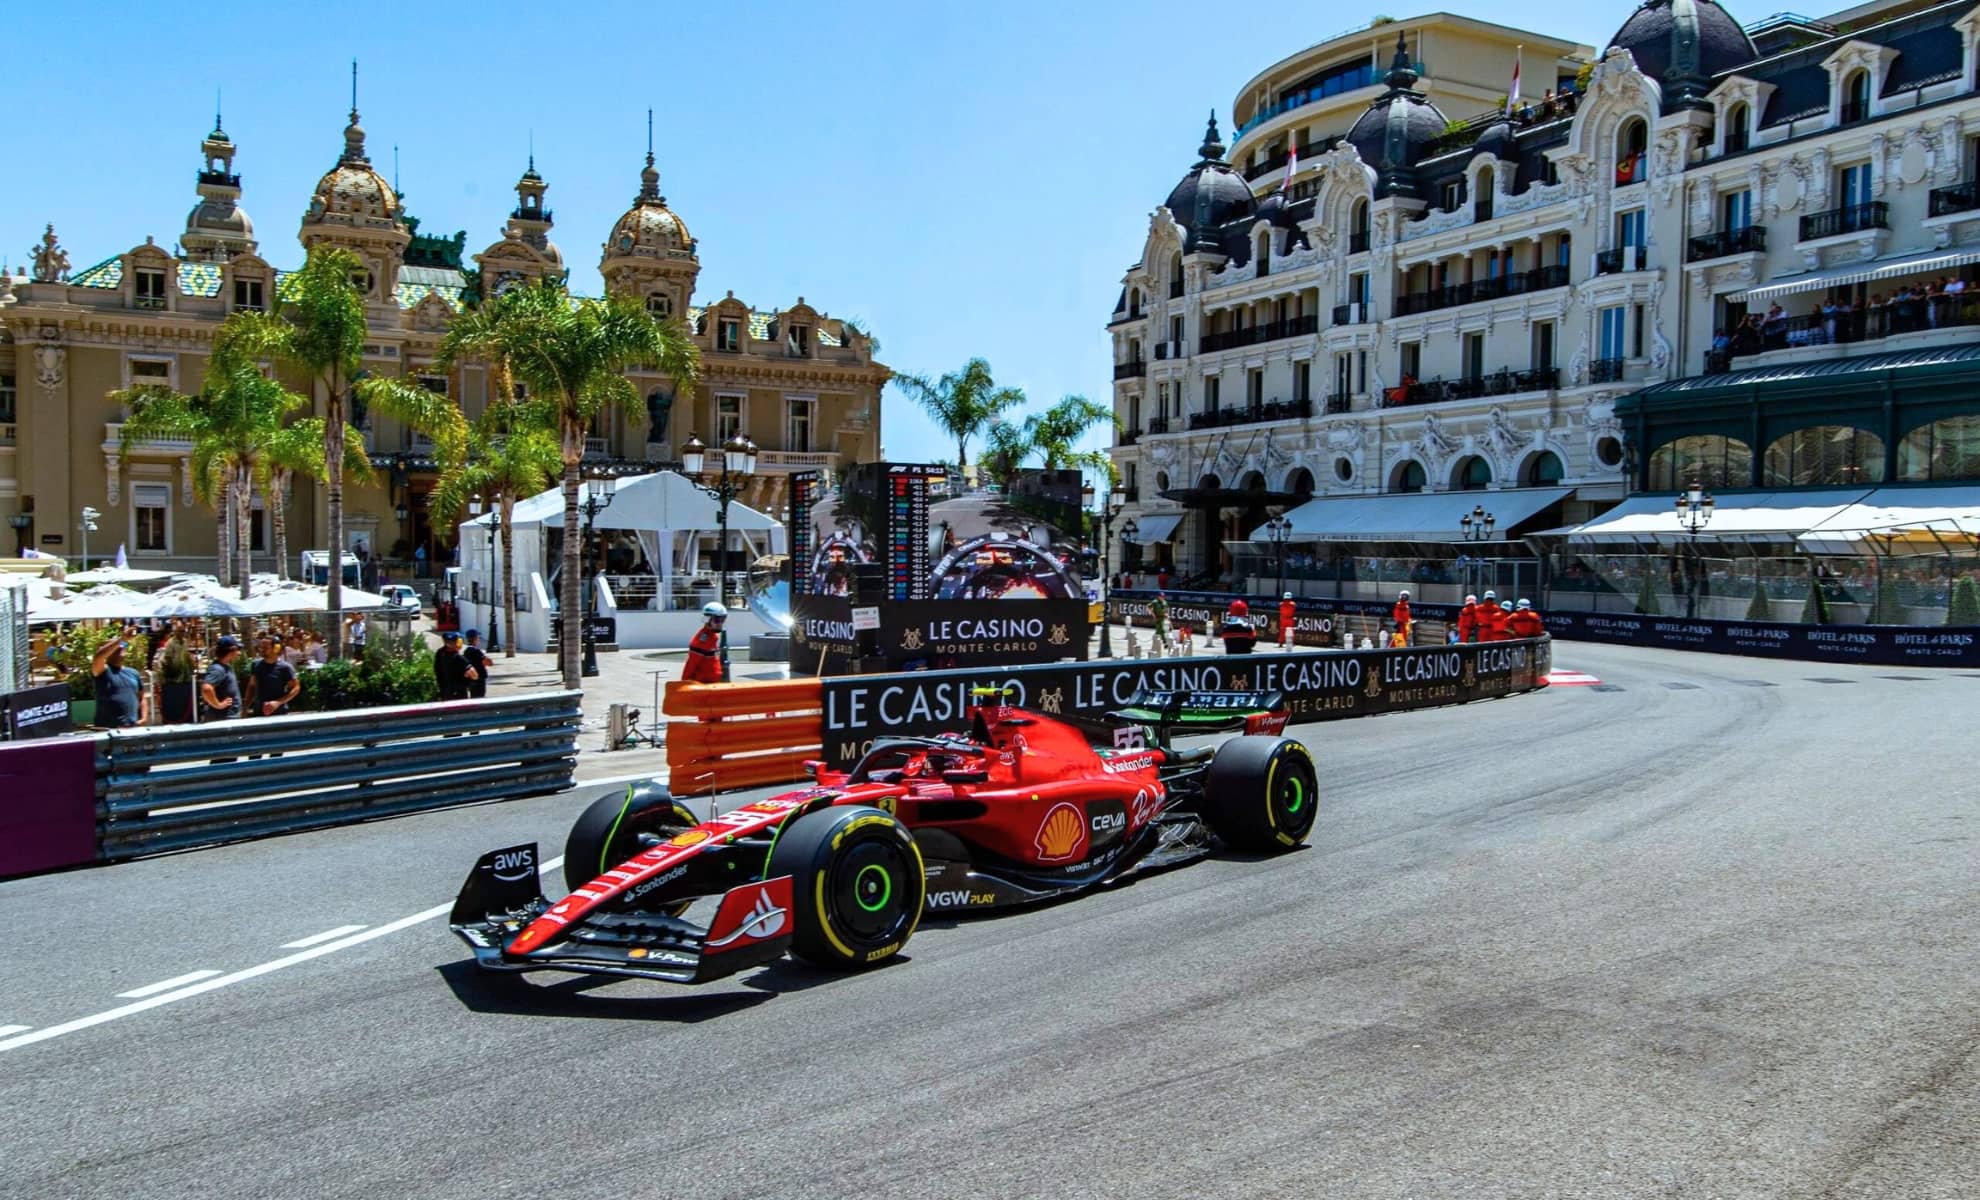 Le Grand Prix de Formule 1 à Monaco, Côte d’Azur